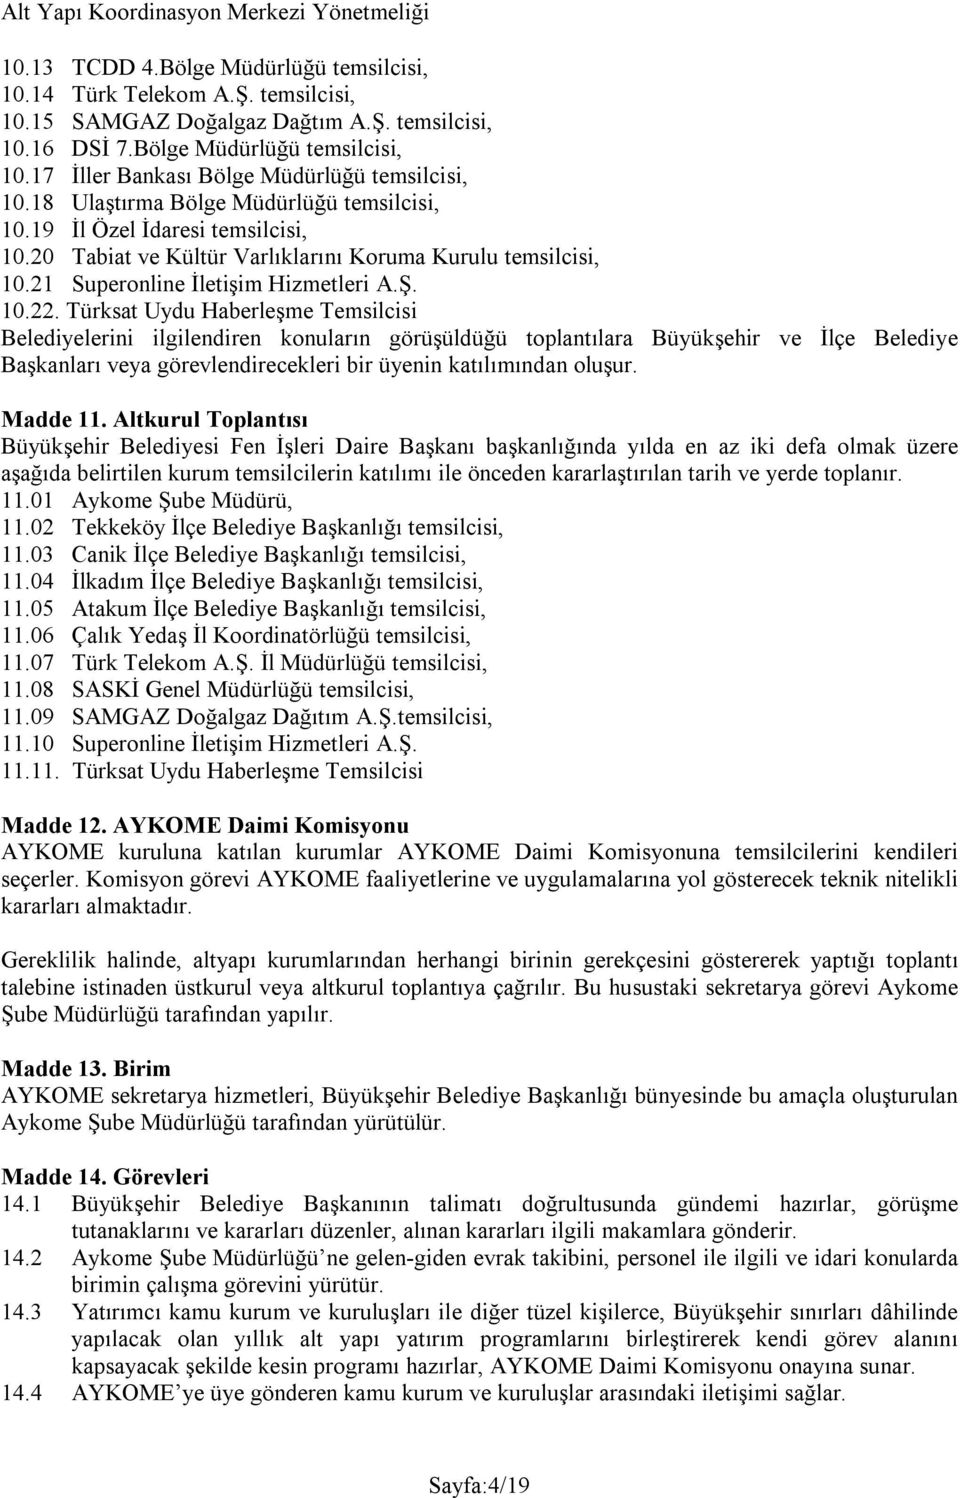 Türksat Uydu Haberleşme Temsilcisi Belediyelerini ilgilendiren konuların görüşüldüğü toplantılara Büyükşehir ve İlçe Belediye Başkanları veya görevlendirecekleri bir üyenin katılımından oluşur.